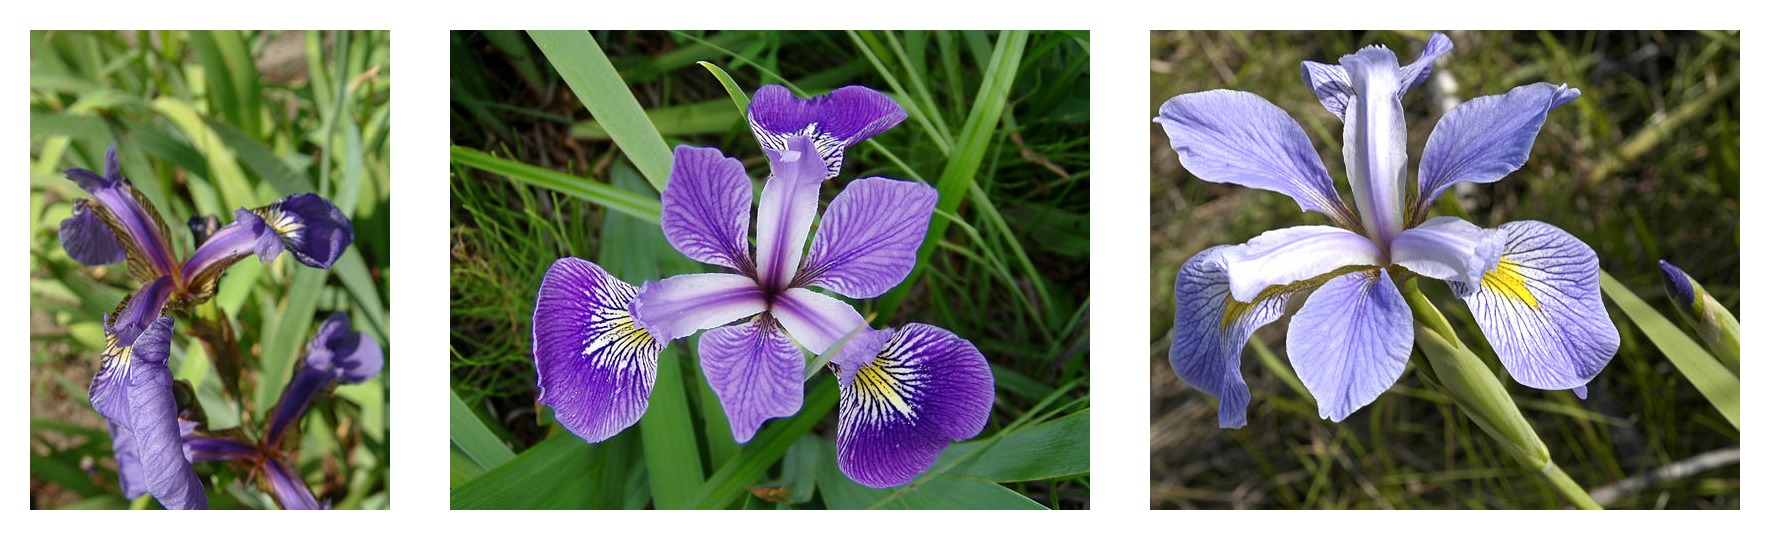 Iris setosa (by Radomil, CC BY-SA 3.0), Iris versicolor, (by Dlanglois, CC BY-SA 3.0), 和 Iris virginica (by Frank Mayfield, CC BY-SA 2.0)